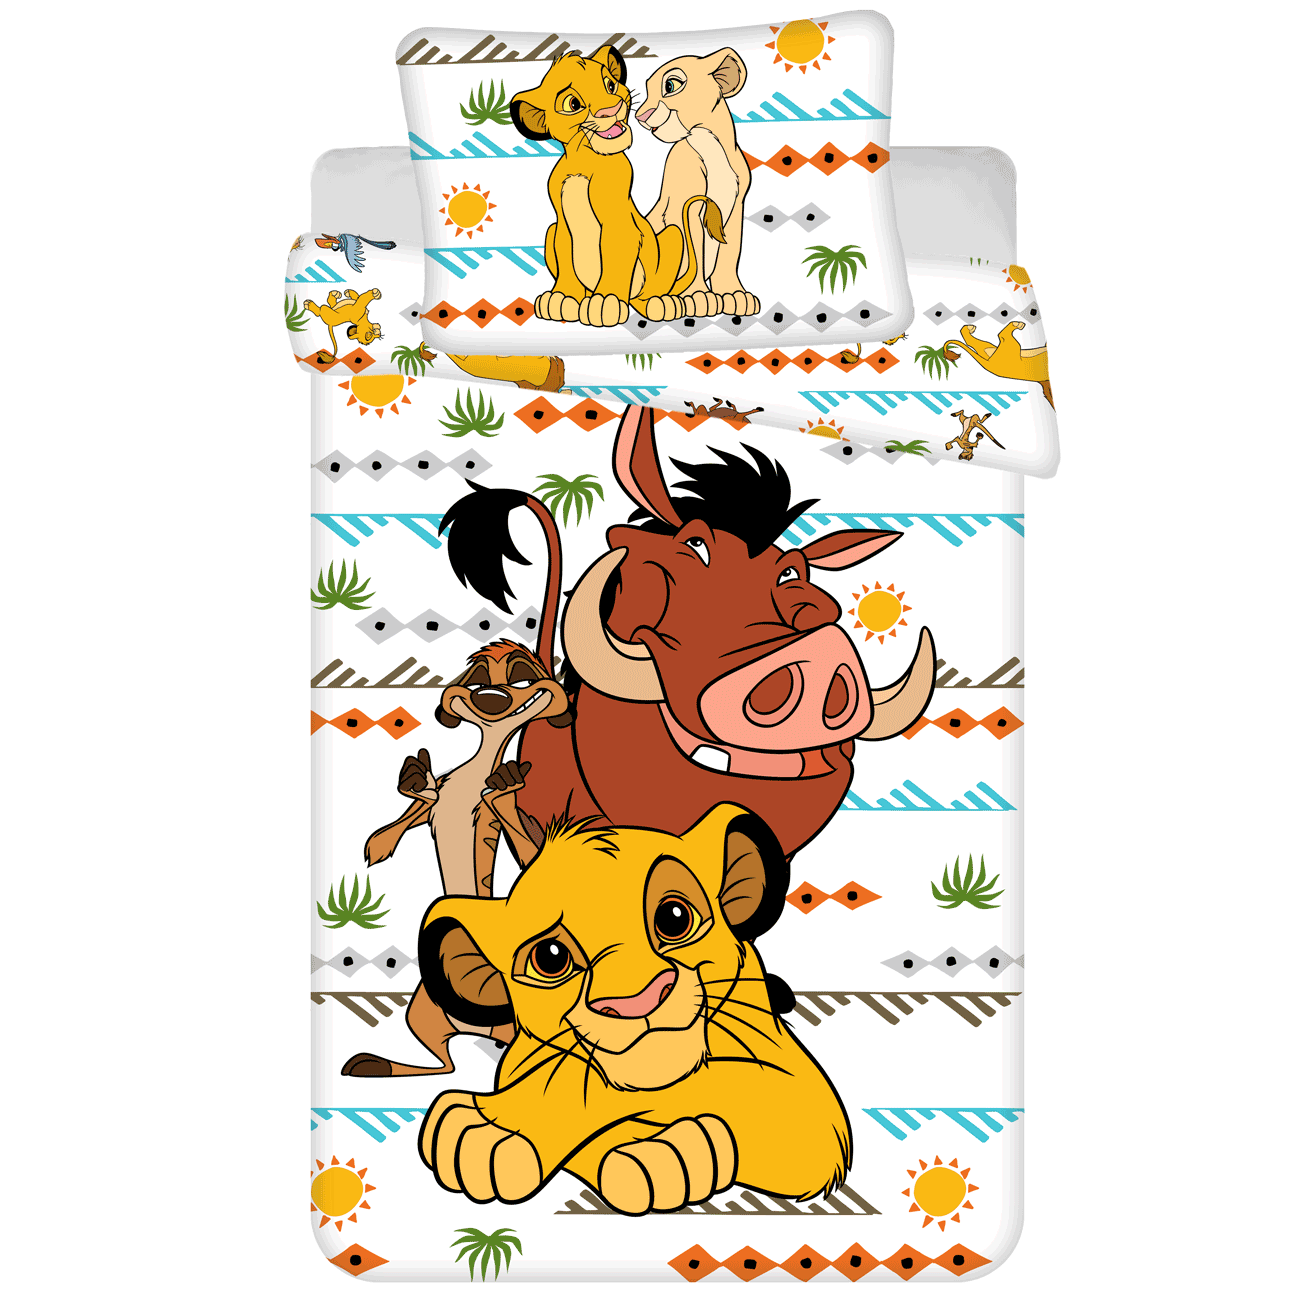 Disney The Lion King Dekbedovertrek Timon en Pumba - 140 x 200 cm pre order